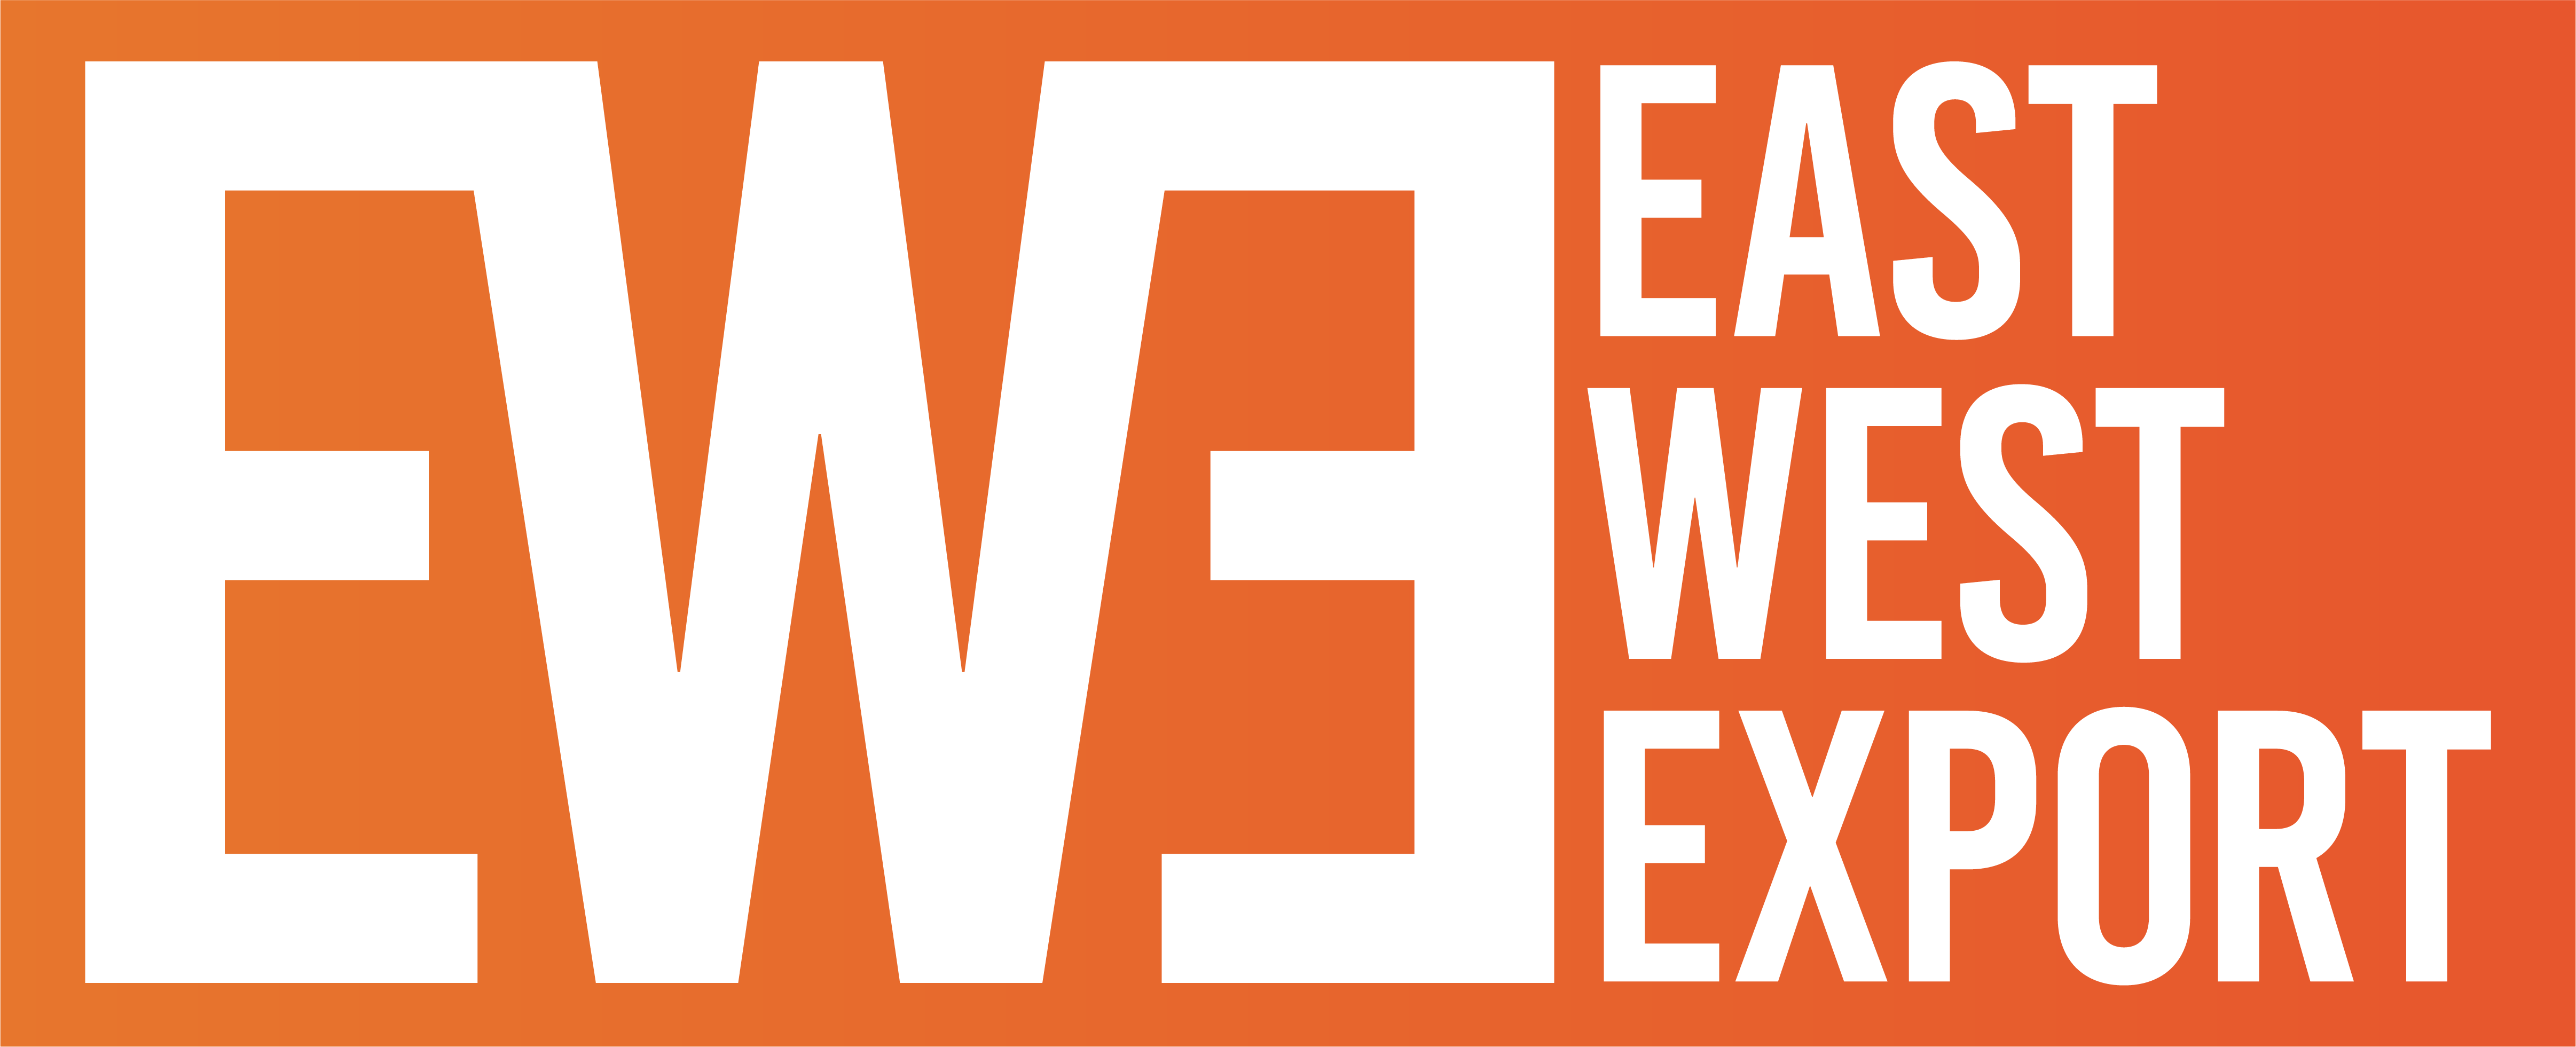 East West Export